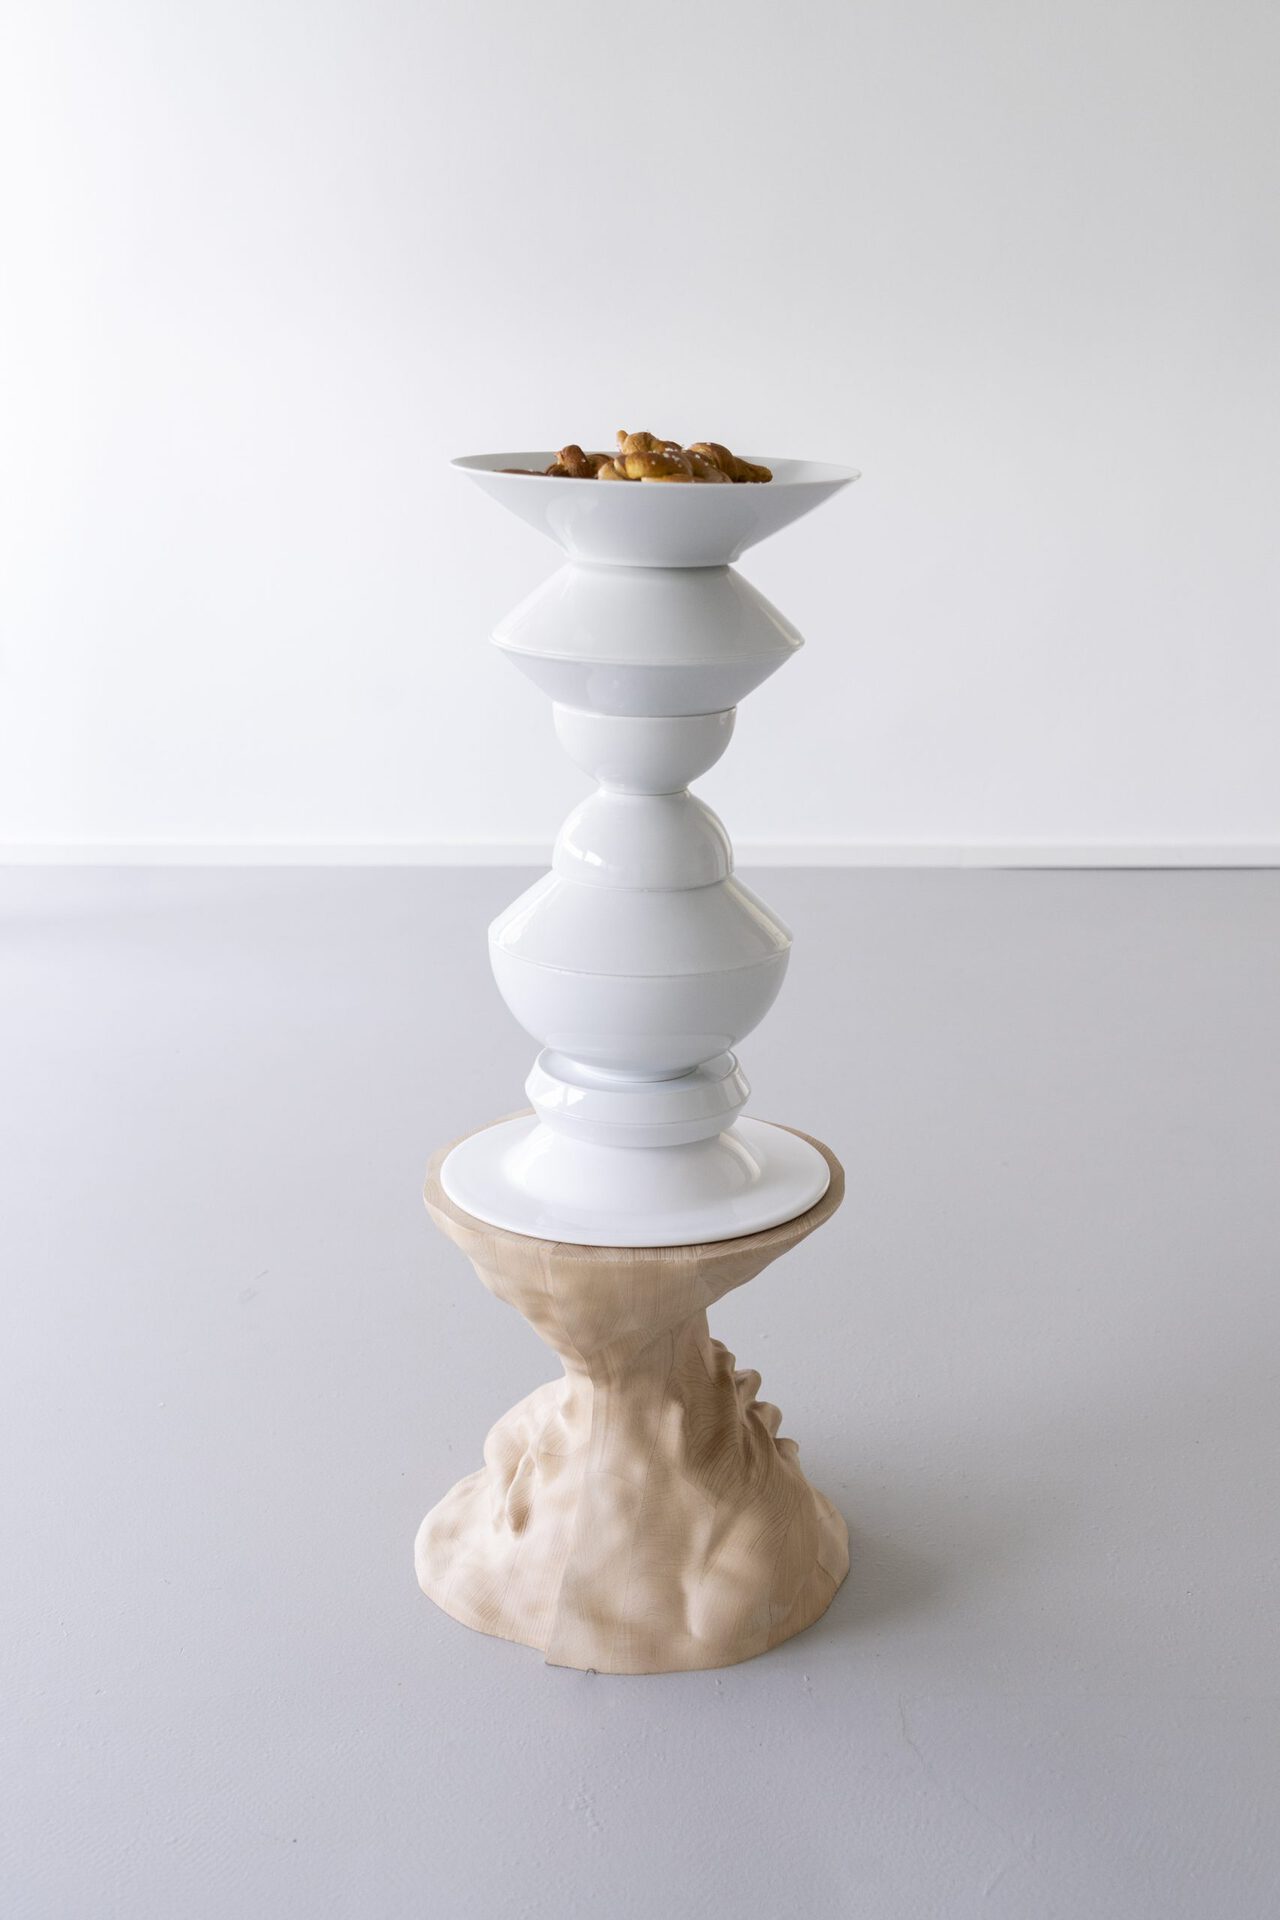 Linus Berg, Luzi Gehrisch, Nassim L'Ghoul &amp; Theresa Weisheit, 365+, 2022, plates on wood pedestal, 33 x 33 x 83 cm